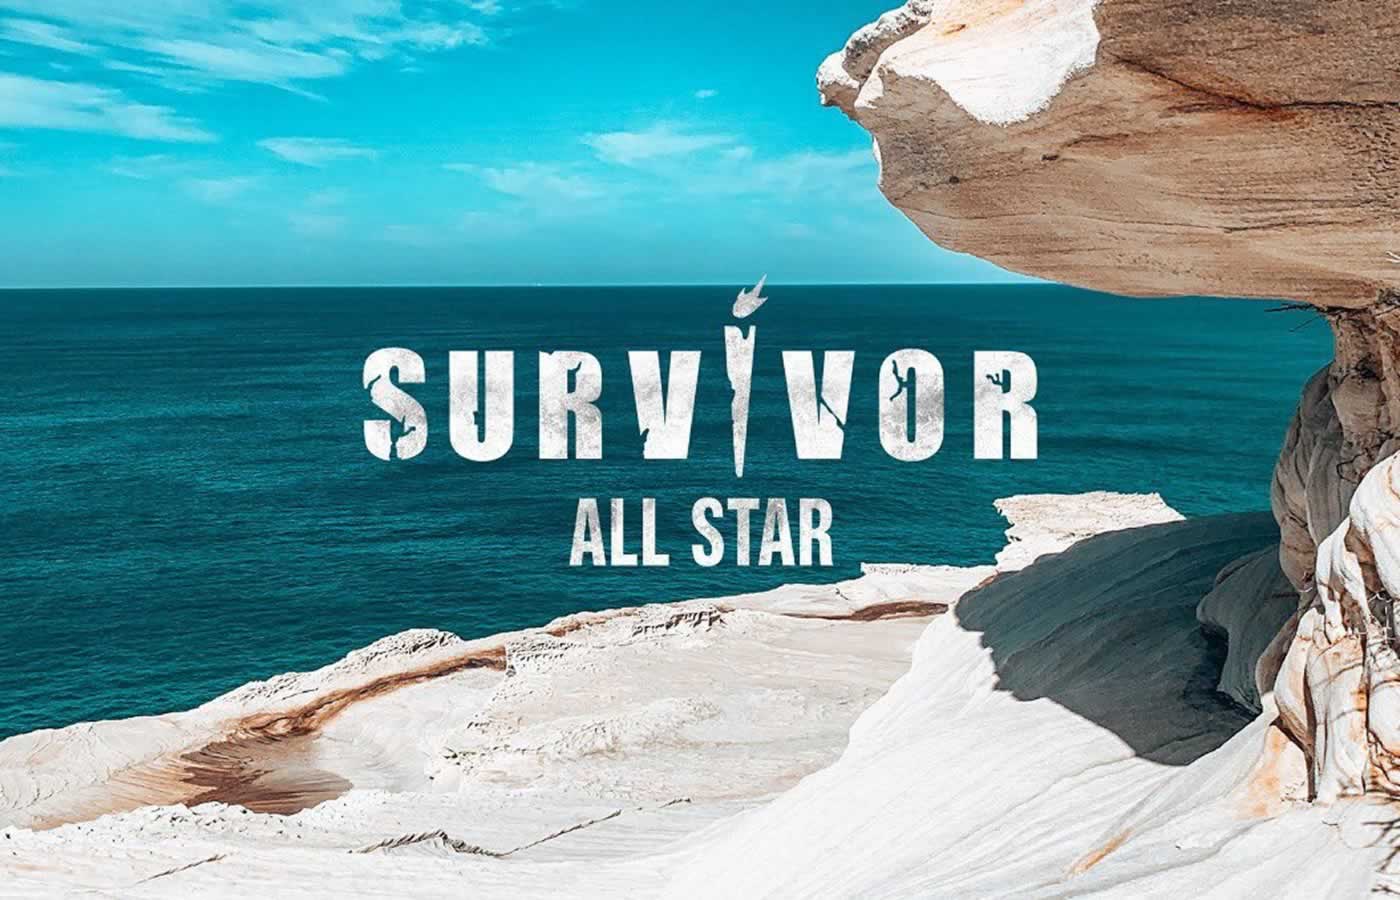 Το μεγαλύτερο τηλεοπτικό γεγονός της τηλεοπτικής σεζόν που έχει ξεκινήσει είναι αδιαμφησβήτητα το πολυαναμενόμενο Survivor All Star που όπως